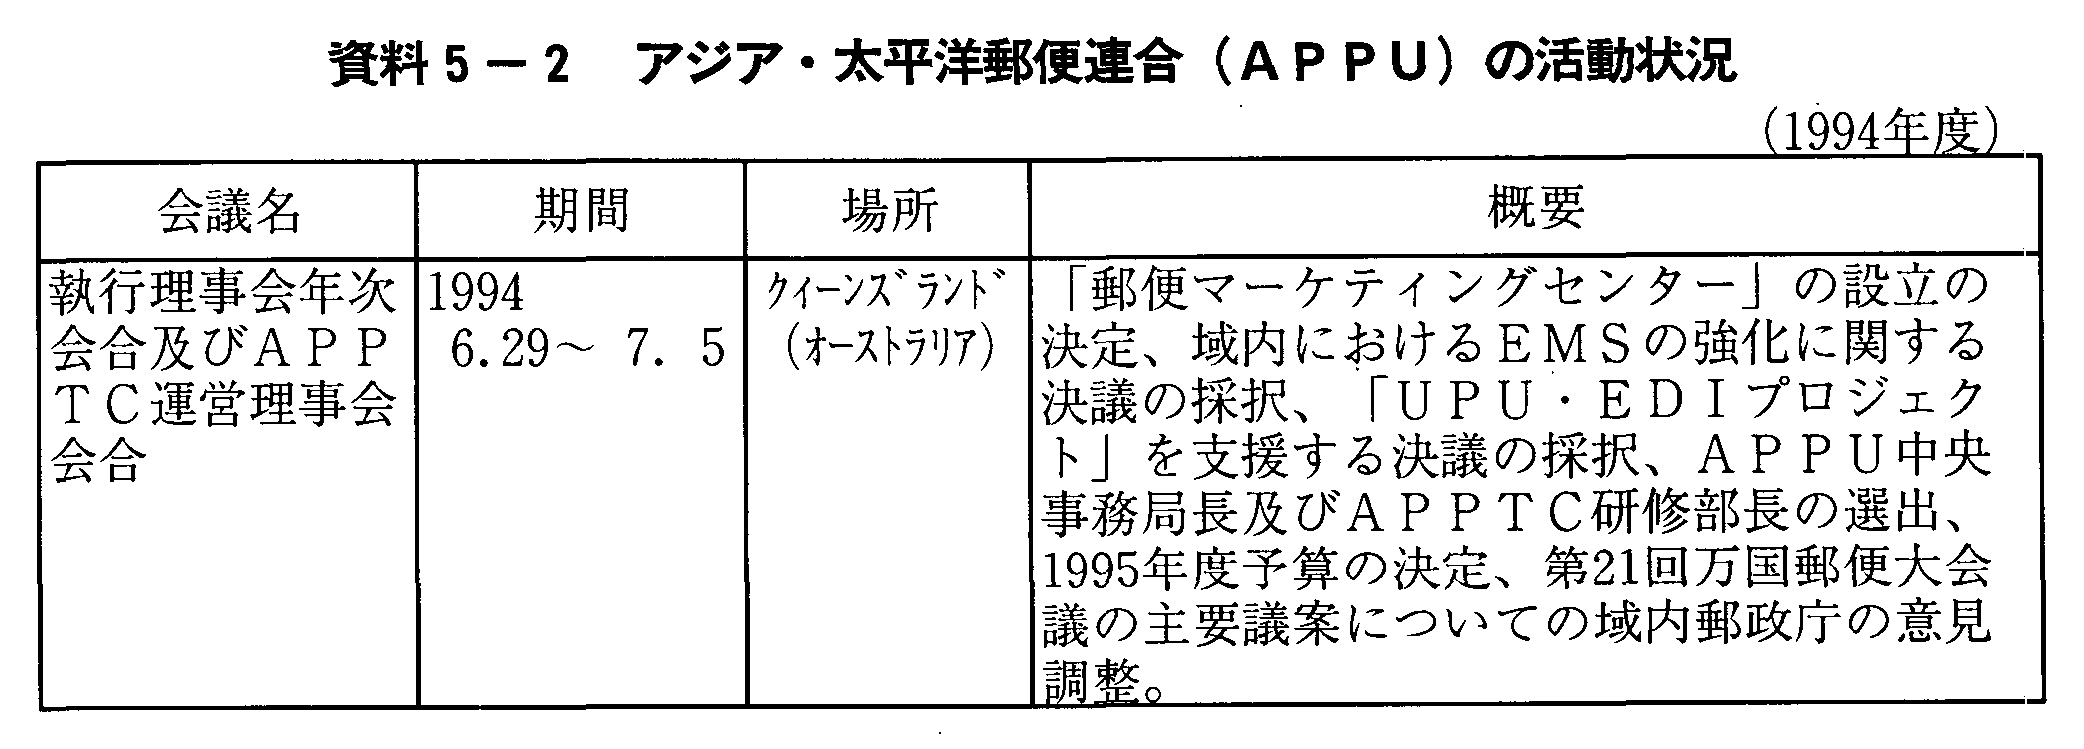 資料5-2 アジア・太平洋郵便連合(APPU)の活動状況(1994年度)